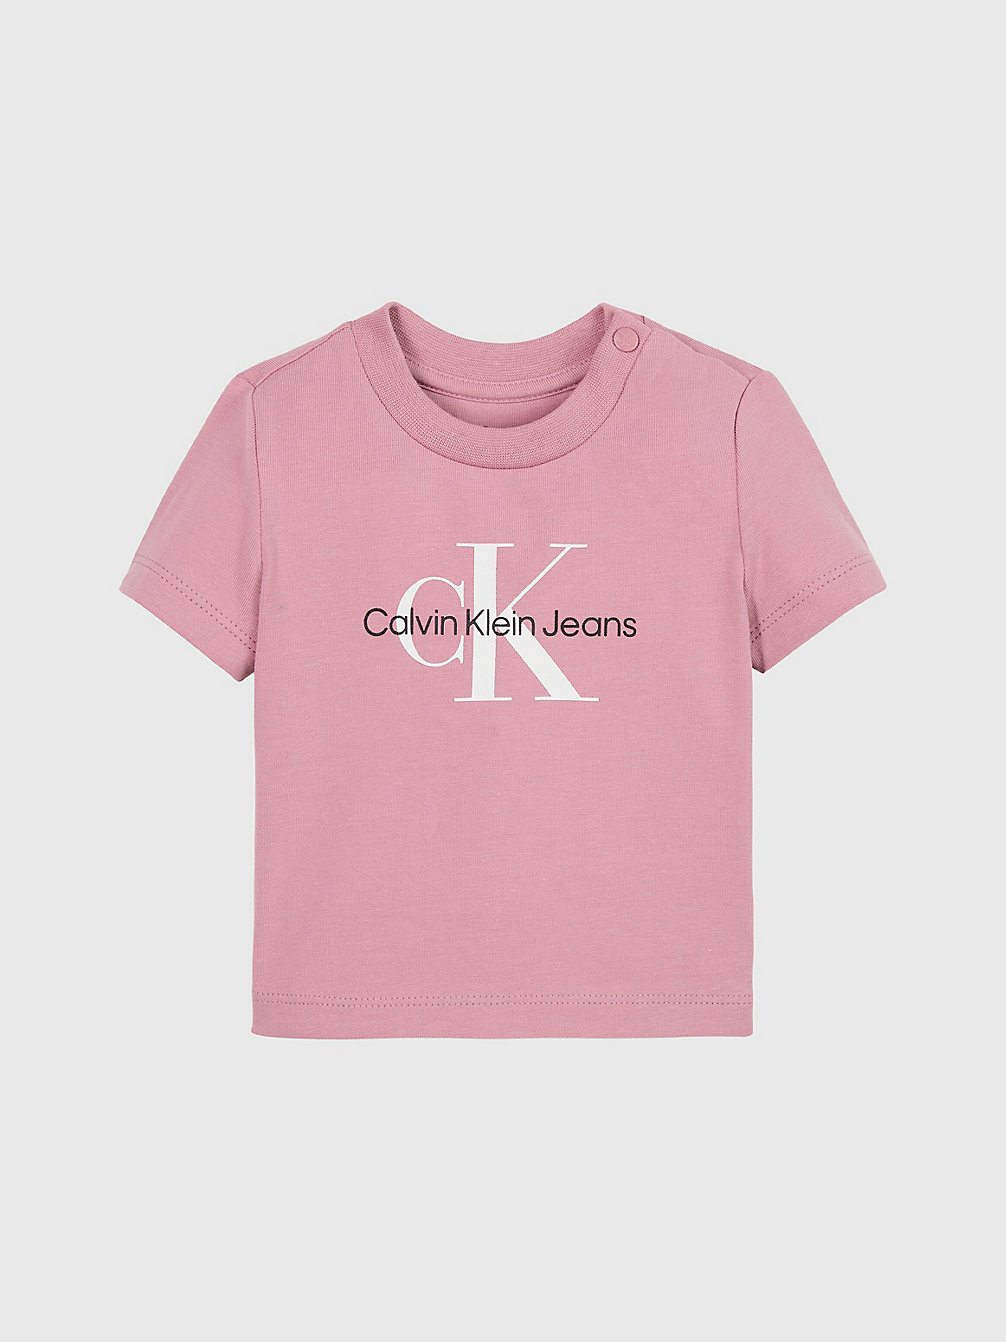 FOXGLOVE > Newborn T-Shirt Met Logo > undefined newborn - Calvin Klein